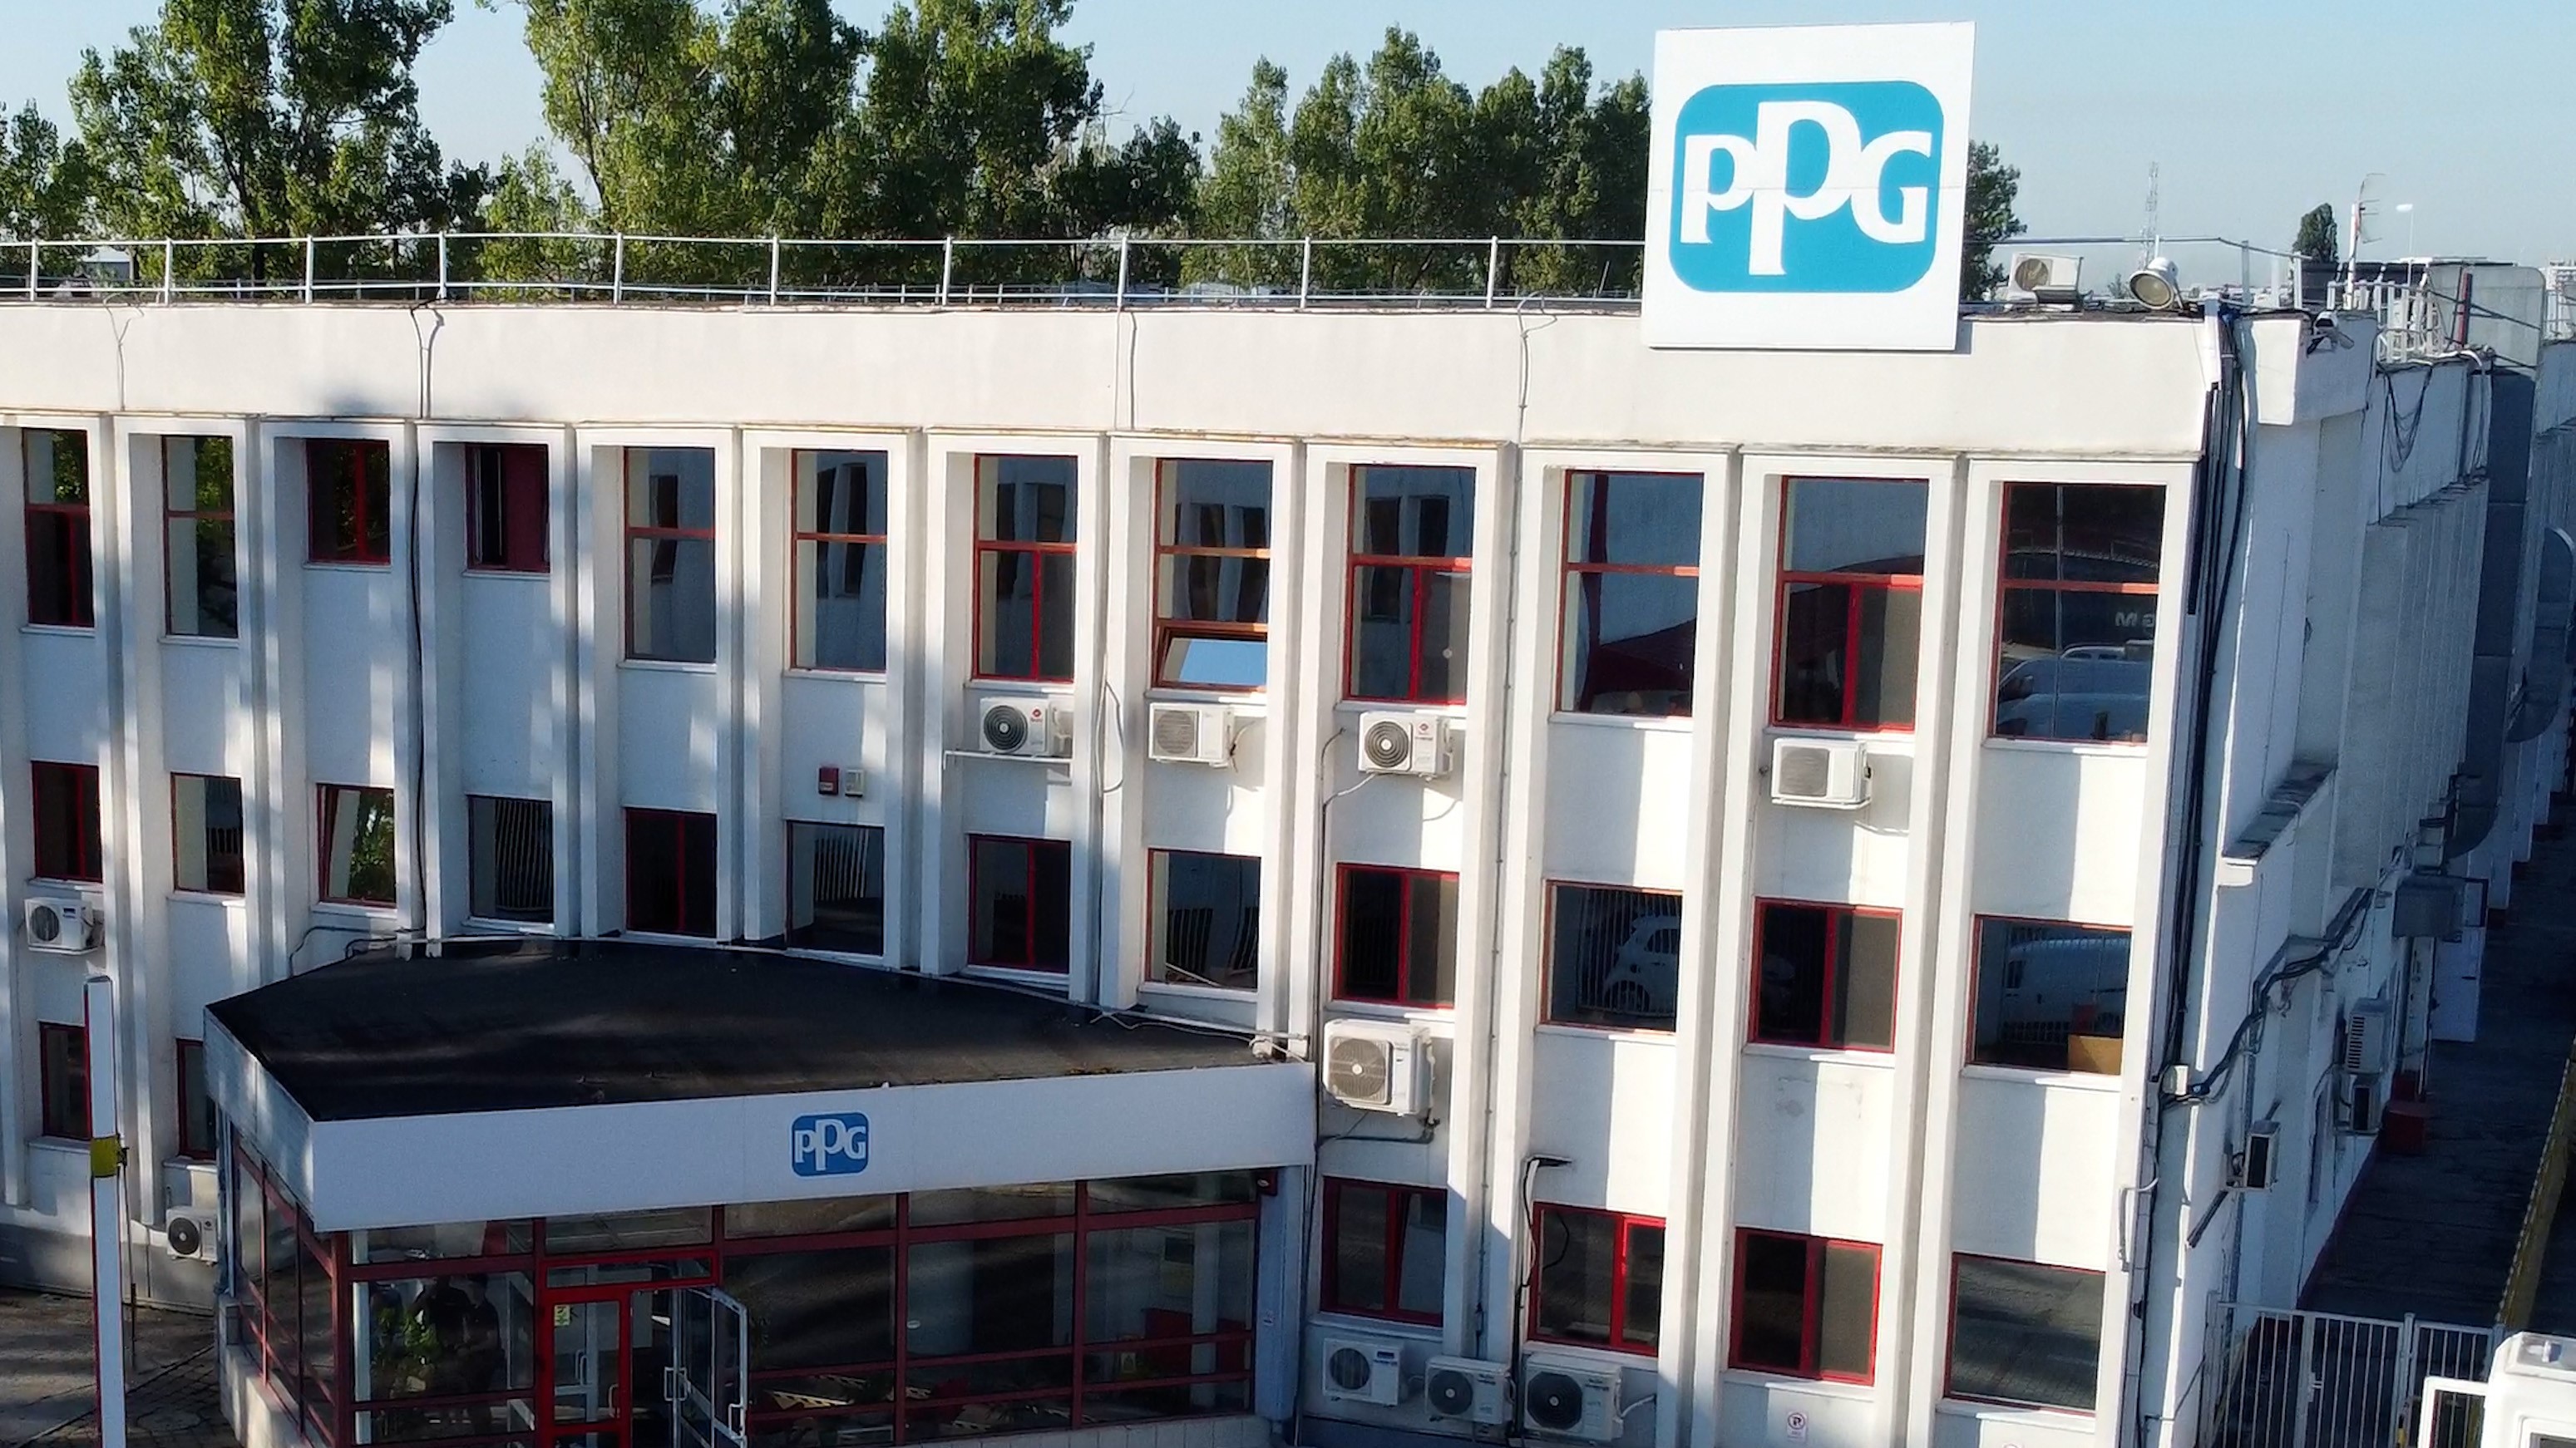 PPG România a instalat 900 de panouri solare pe acoperişul fabricii, pentru reducerea emisiilor de CO2